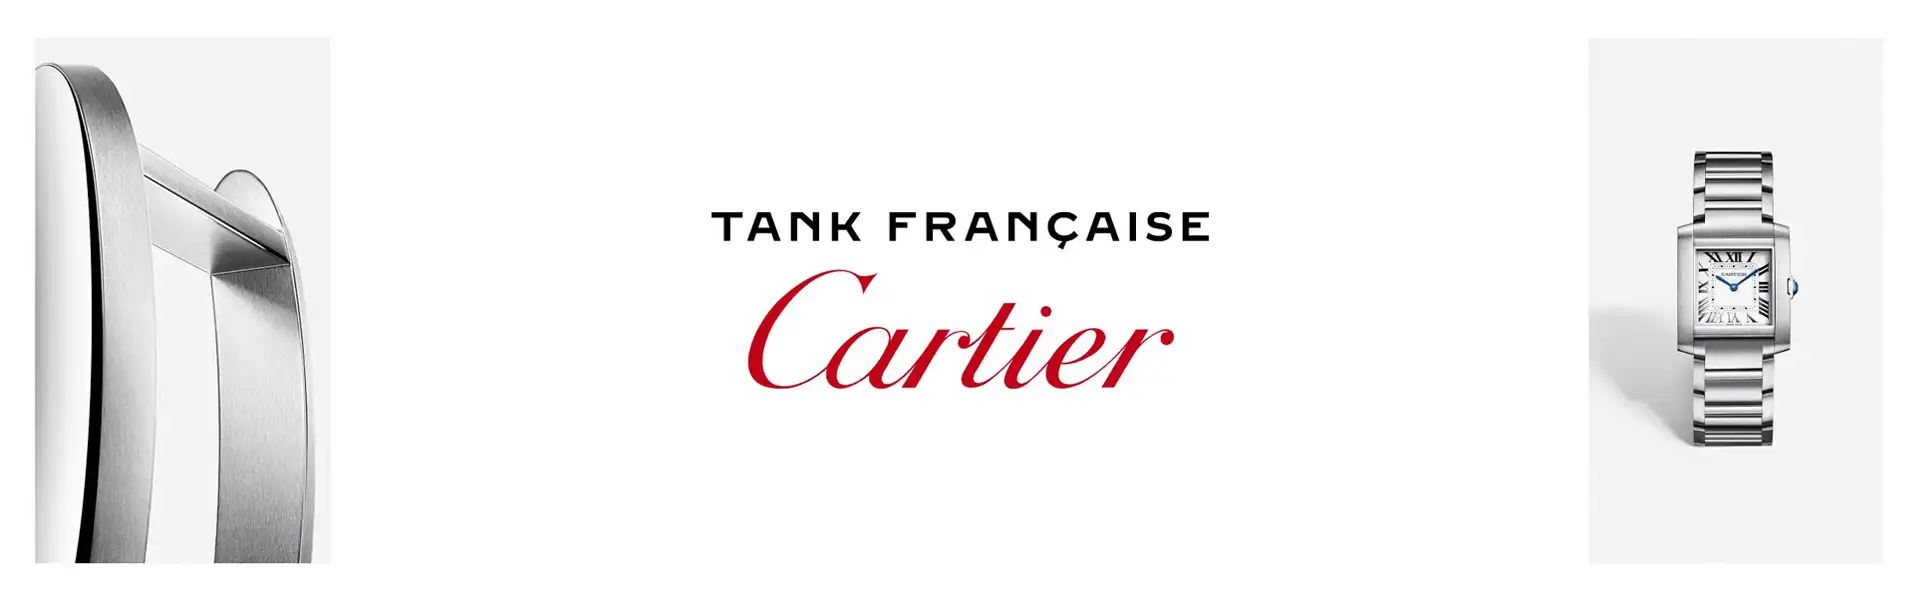 Cartier banner